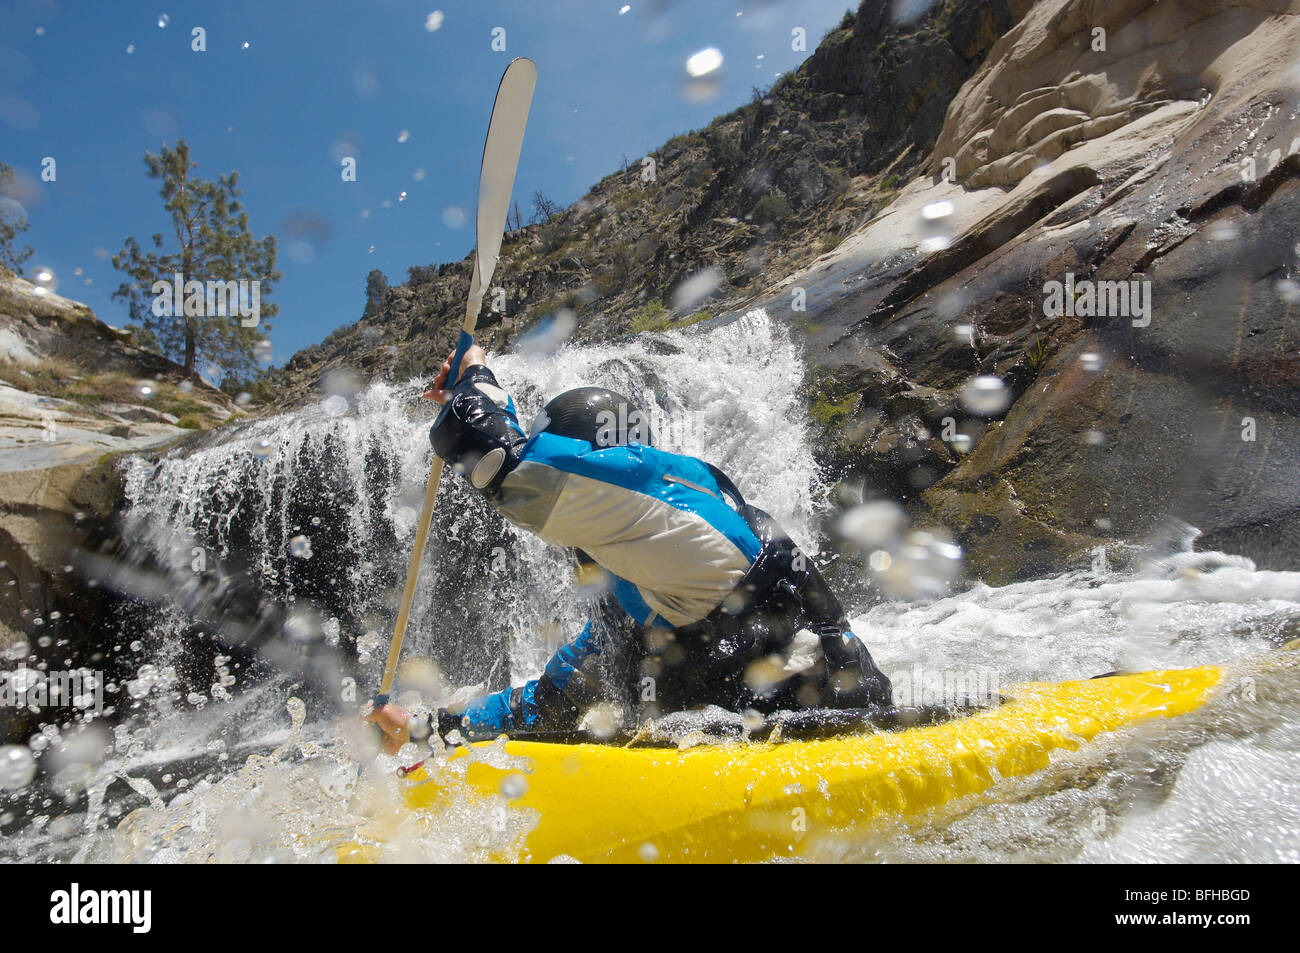 Man kayaking in mountain river Stock Photo